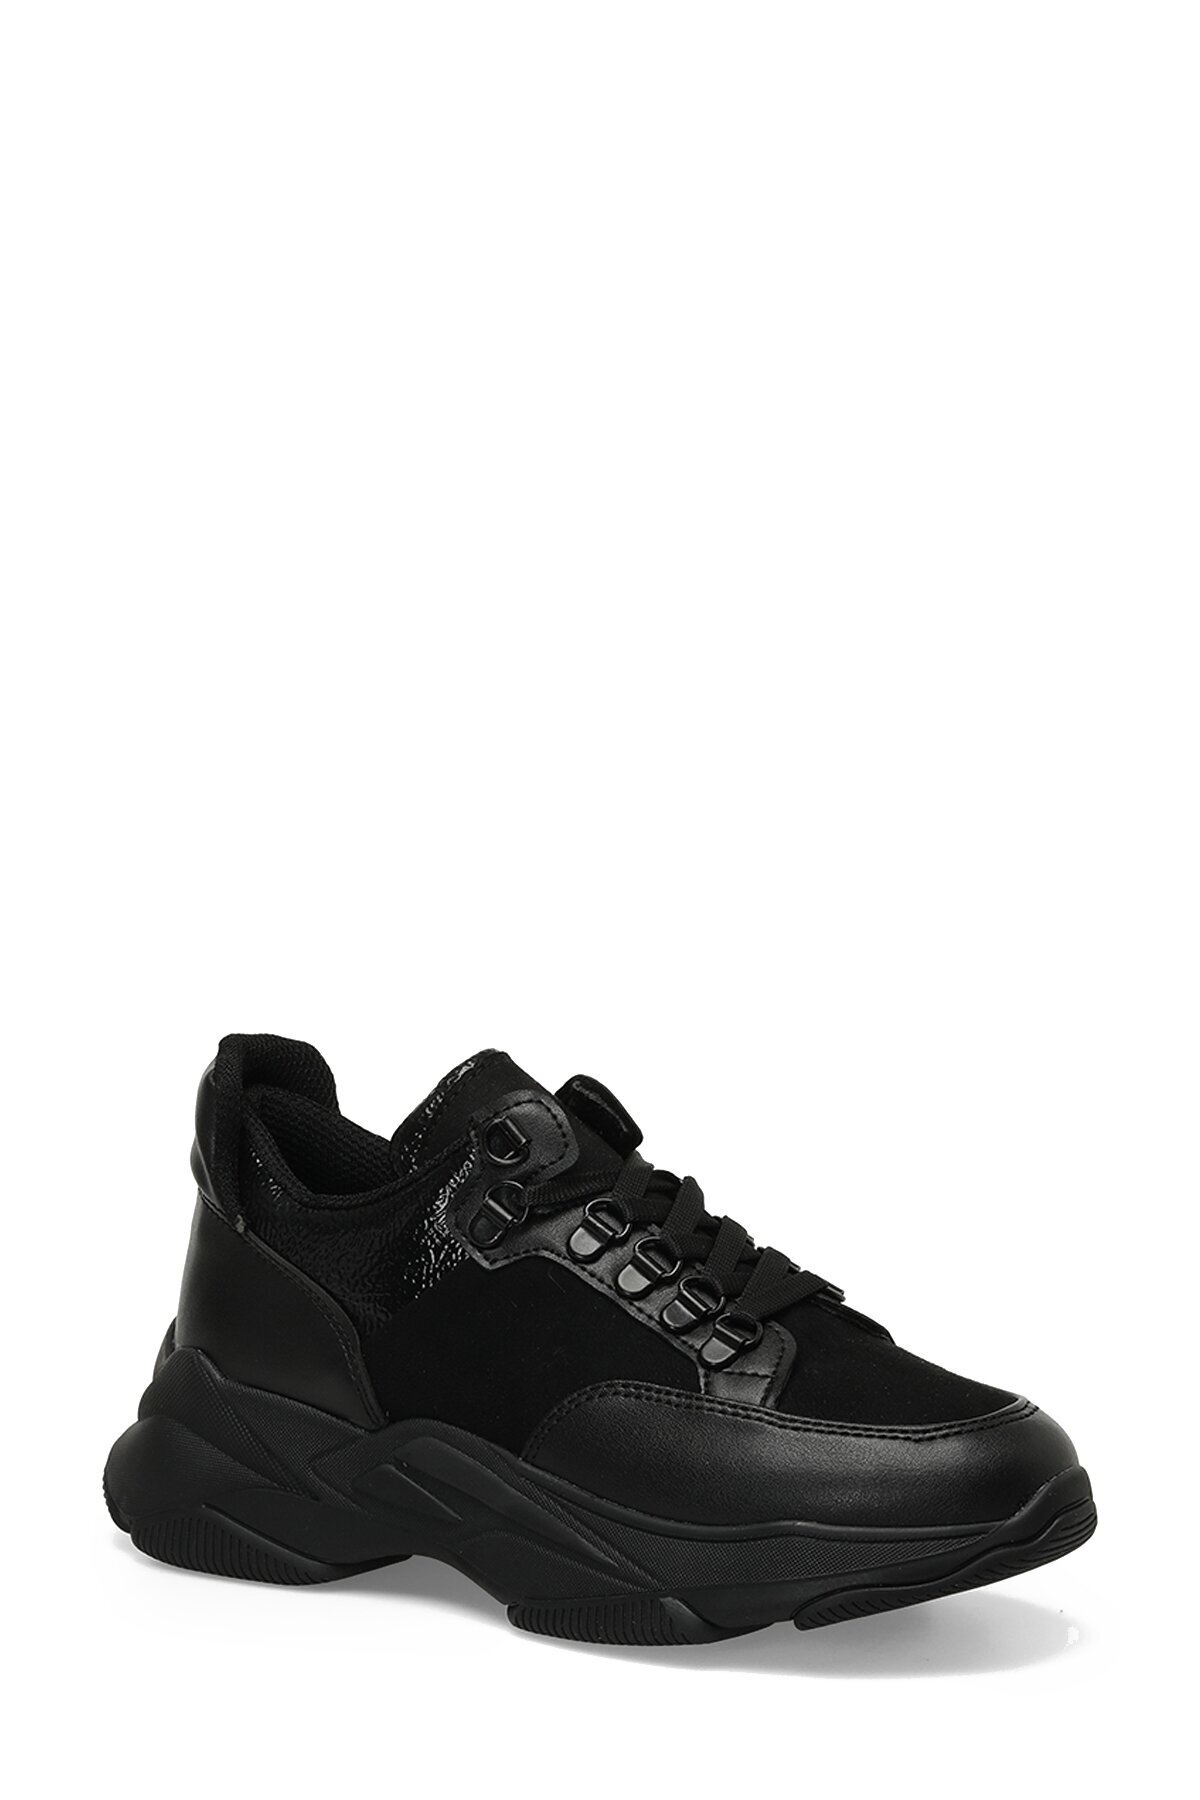 Butigo DONKA 3PR Women's Black Sneaker